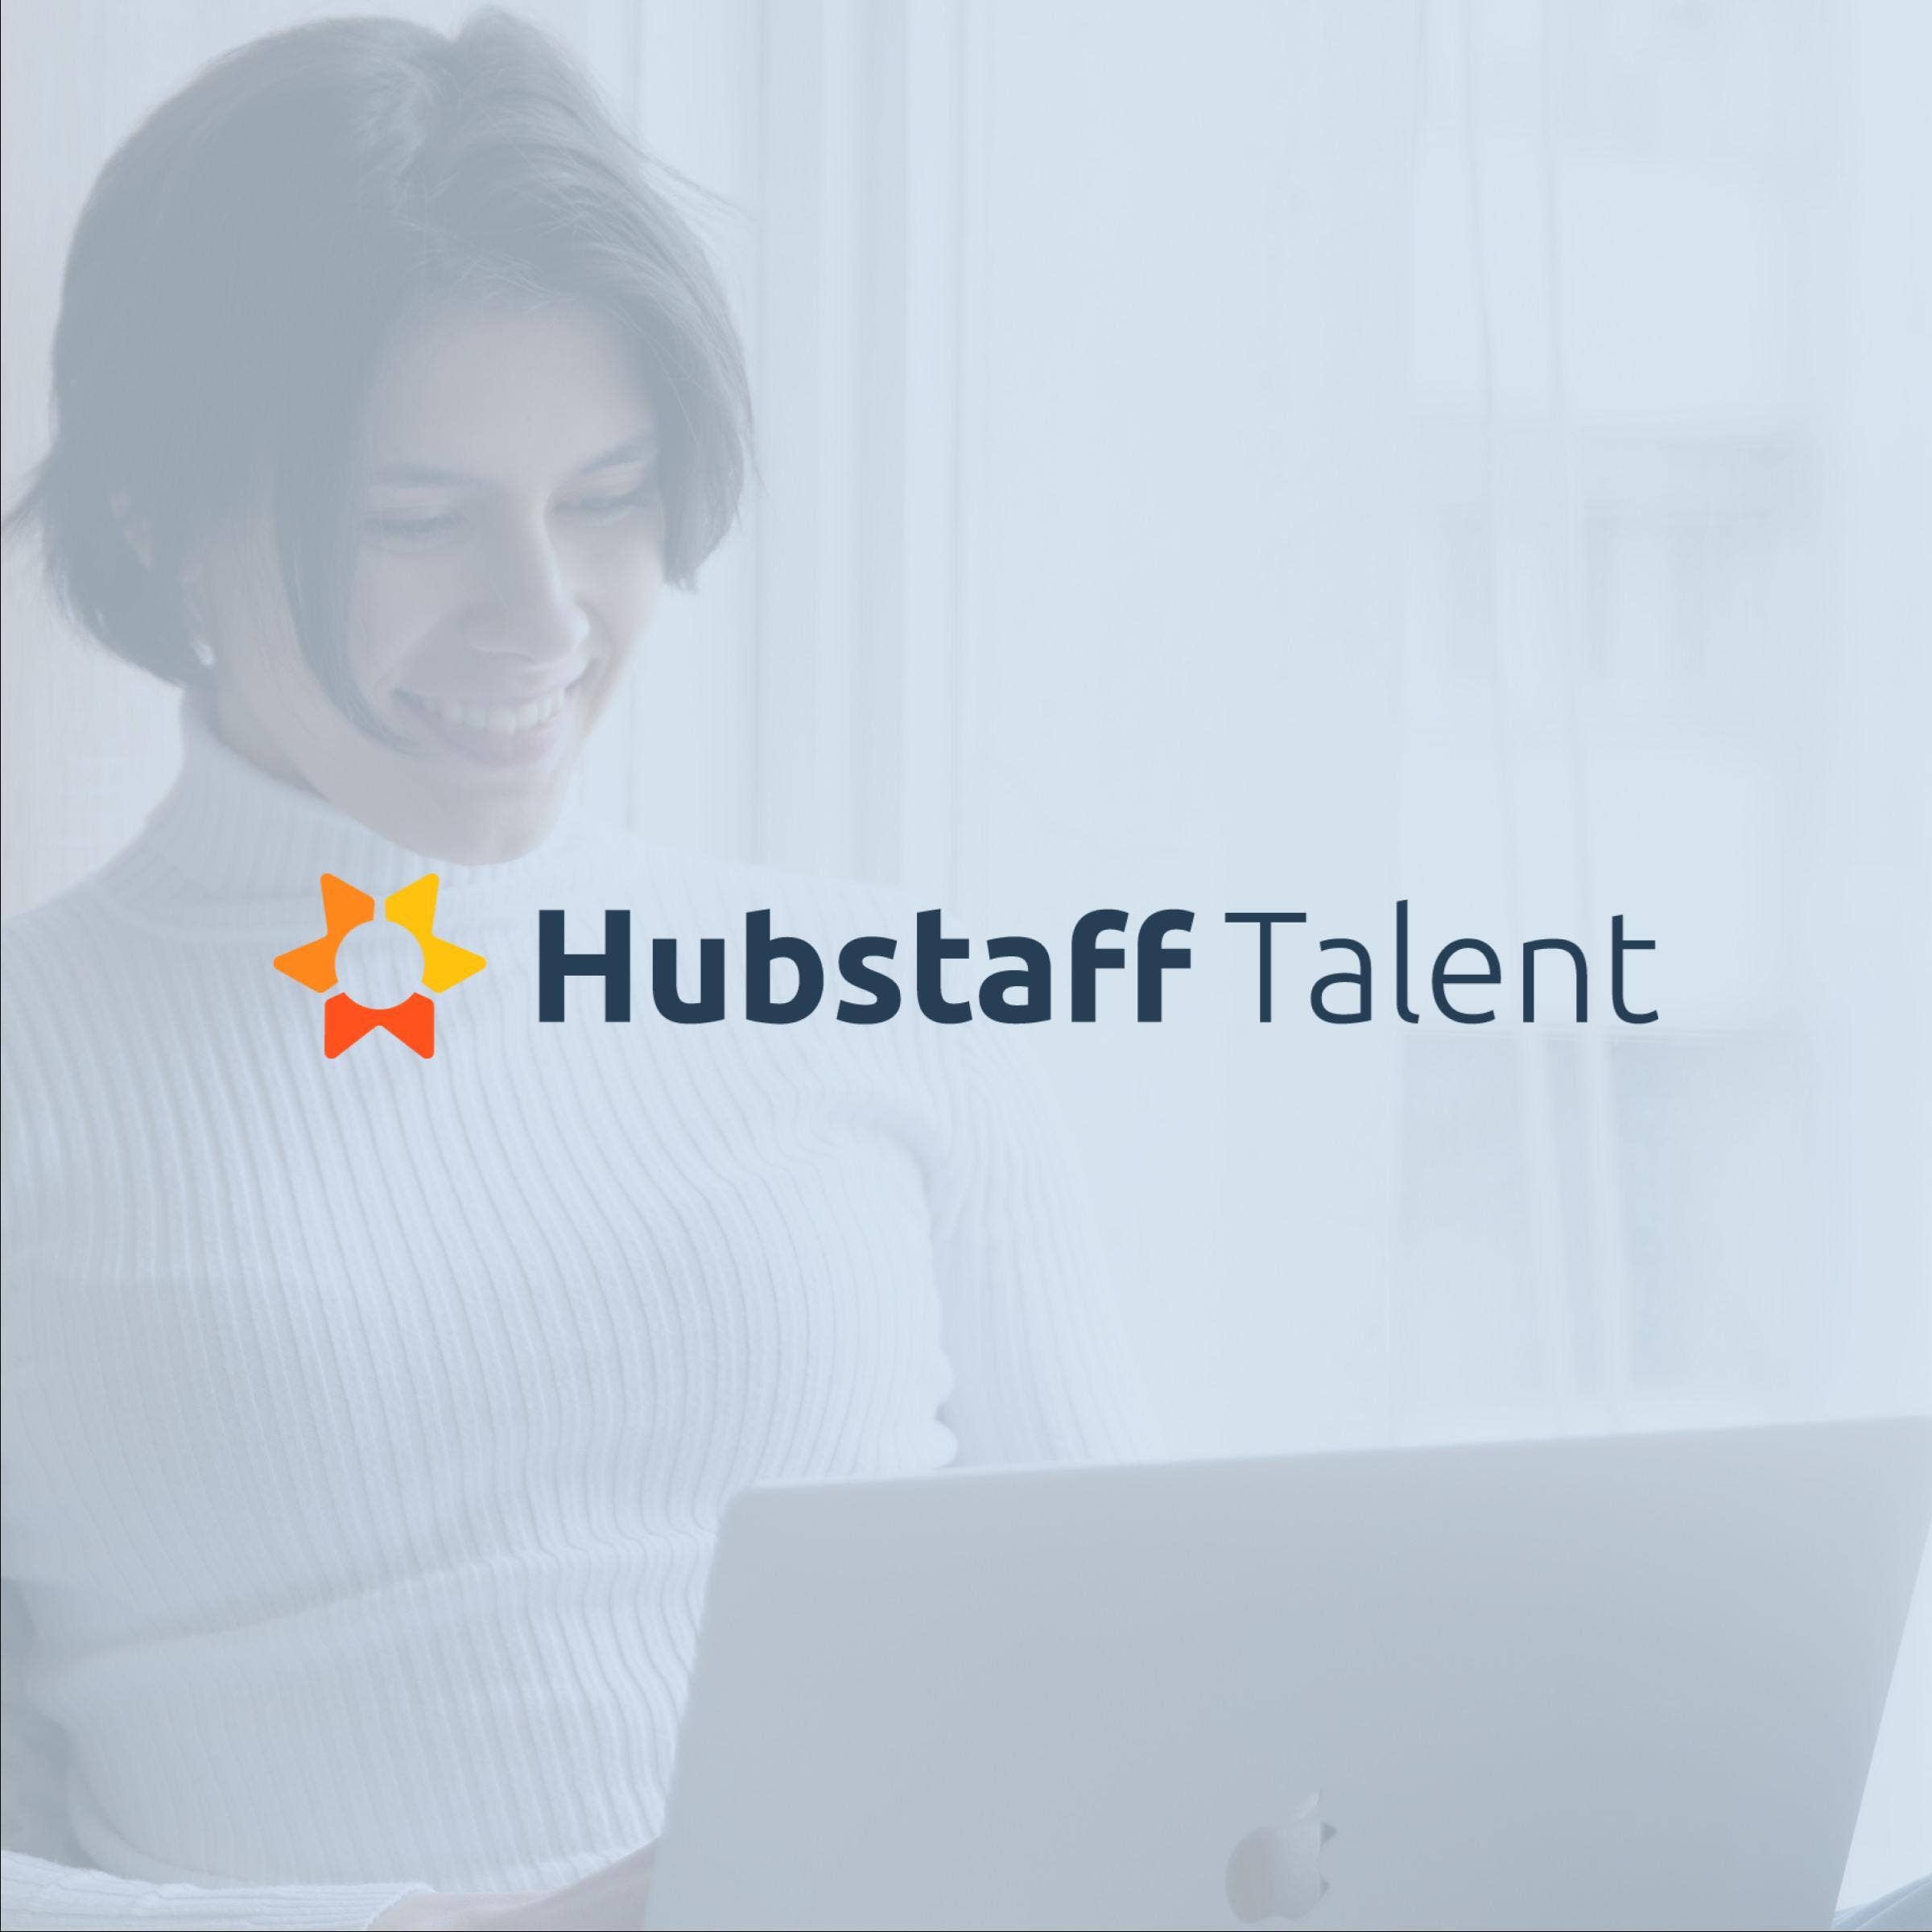 hubstaff talent jobs